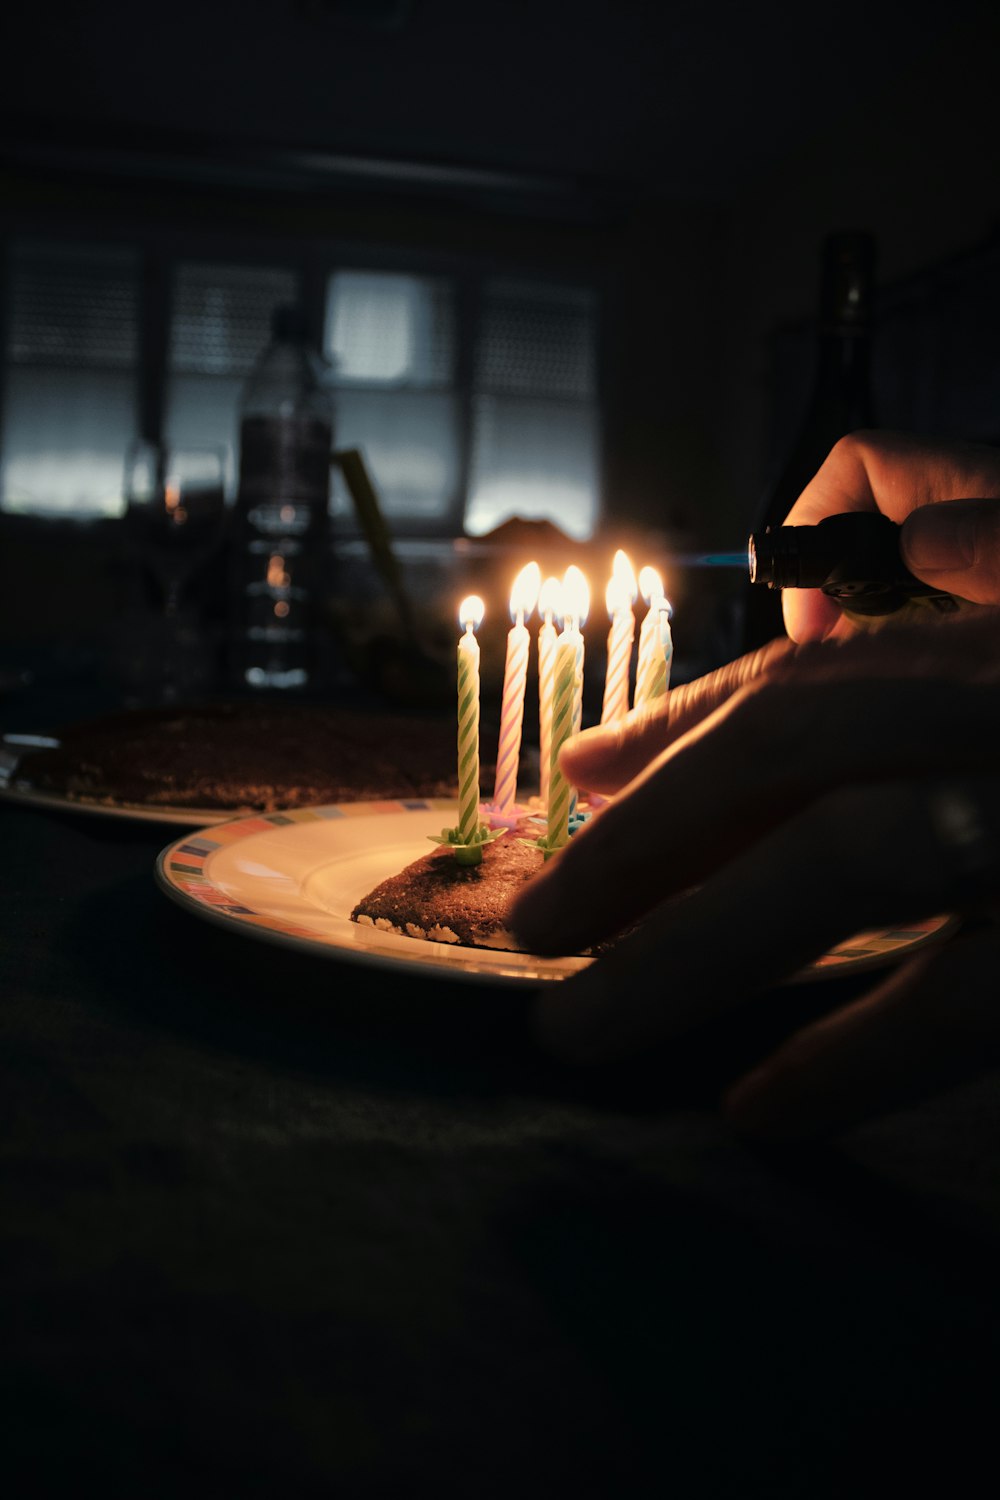 흰색 세라믹 원형 접시에 불이 켜진 촛불을 들고 있는 사람